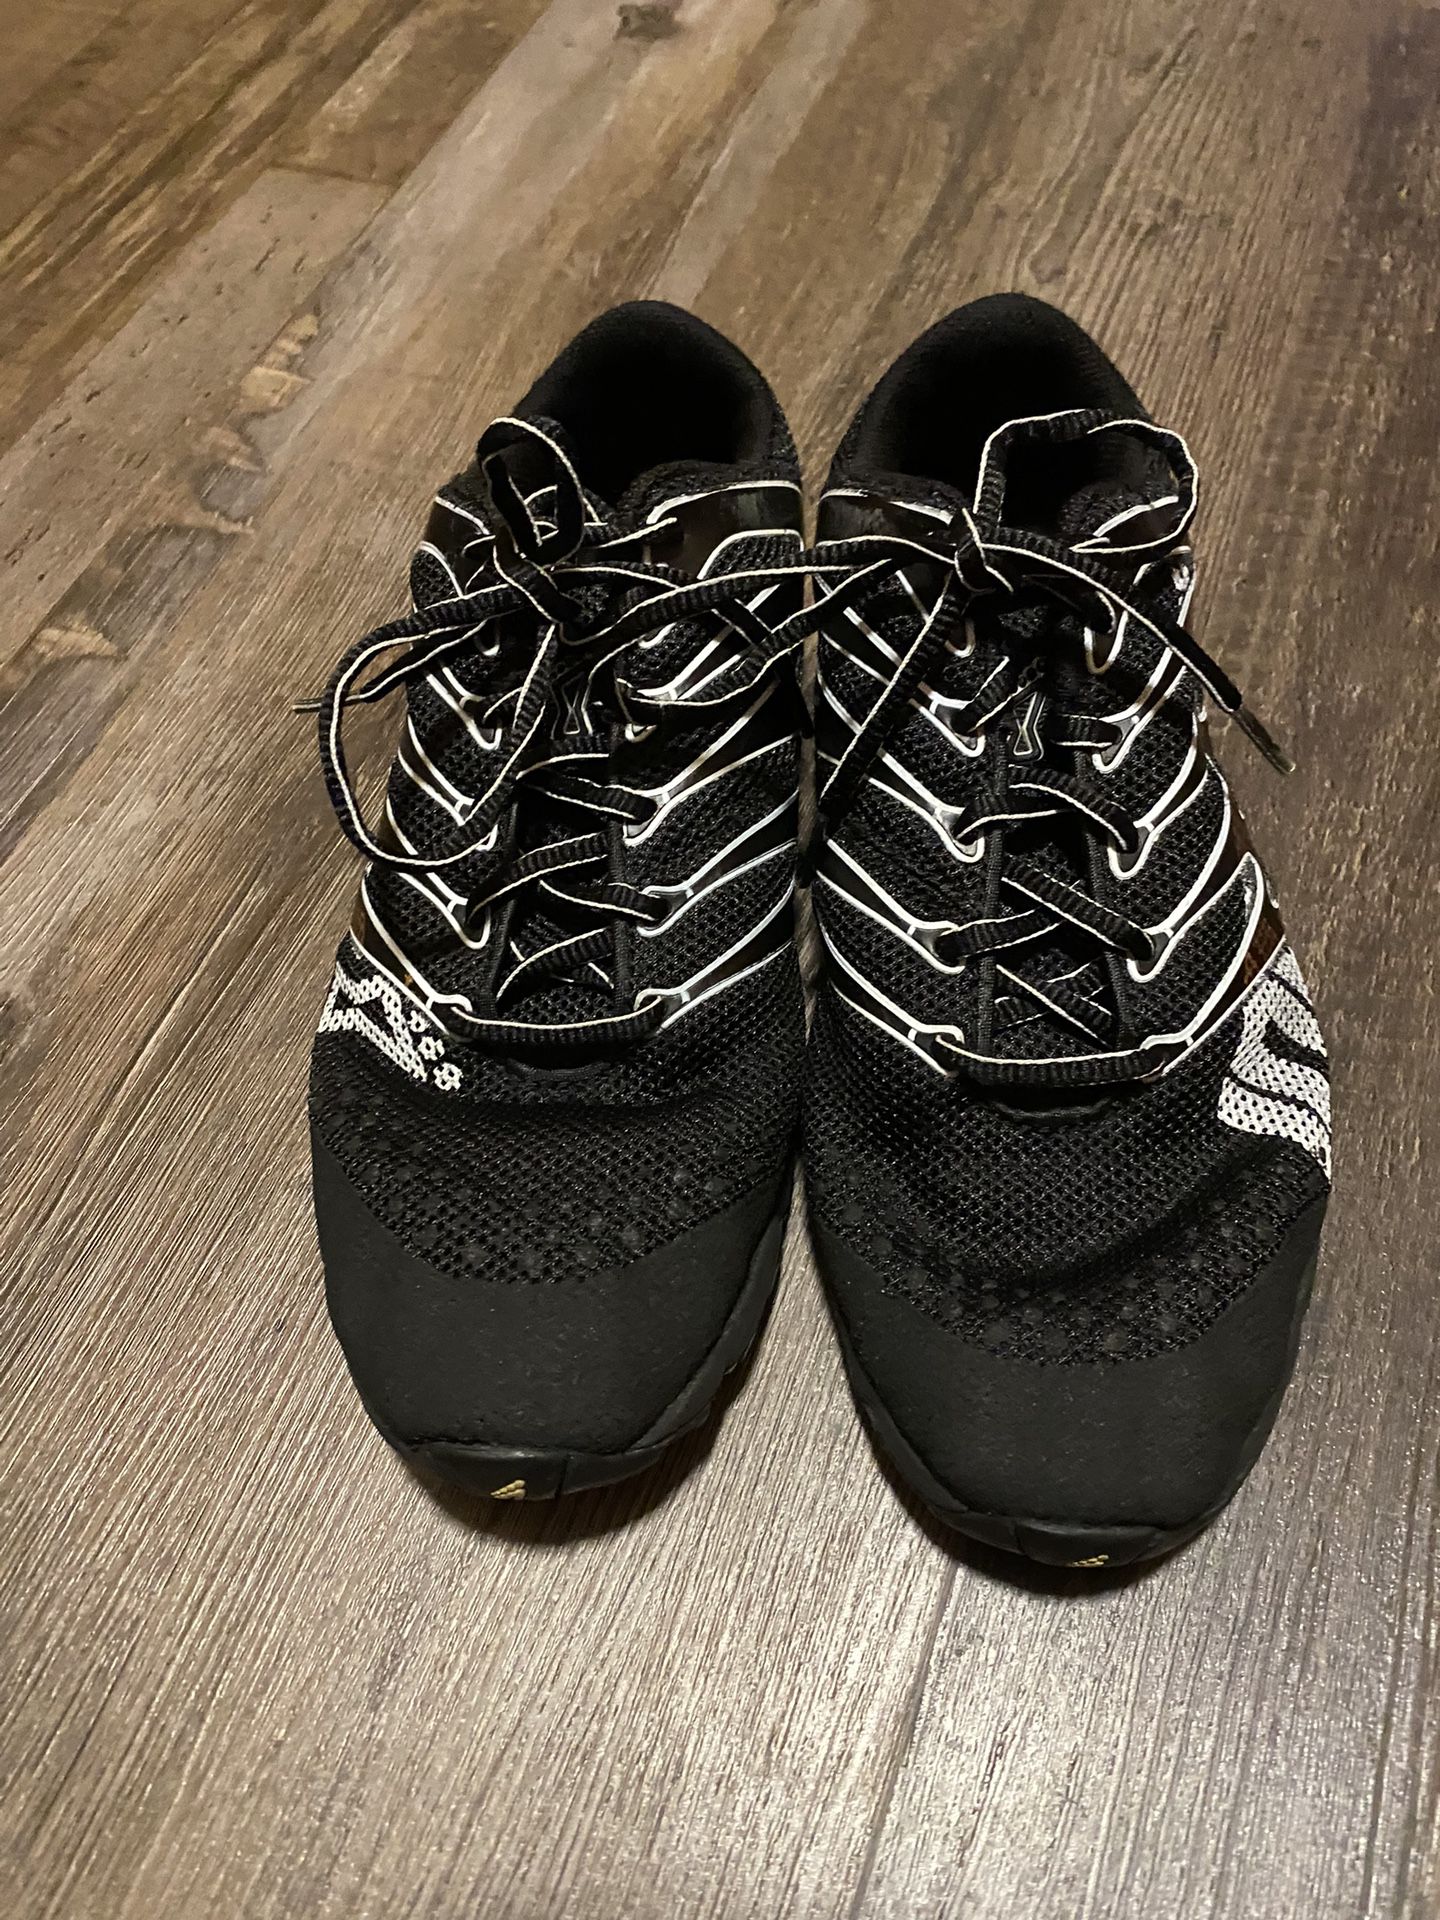 Inov8 F-Lite 230 Women’s 8.5 CrossFit Shoes